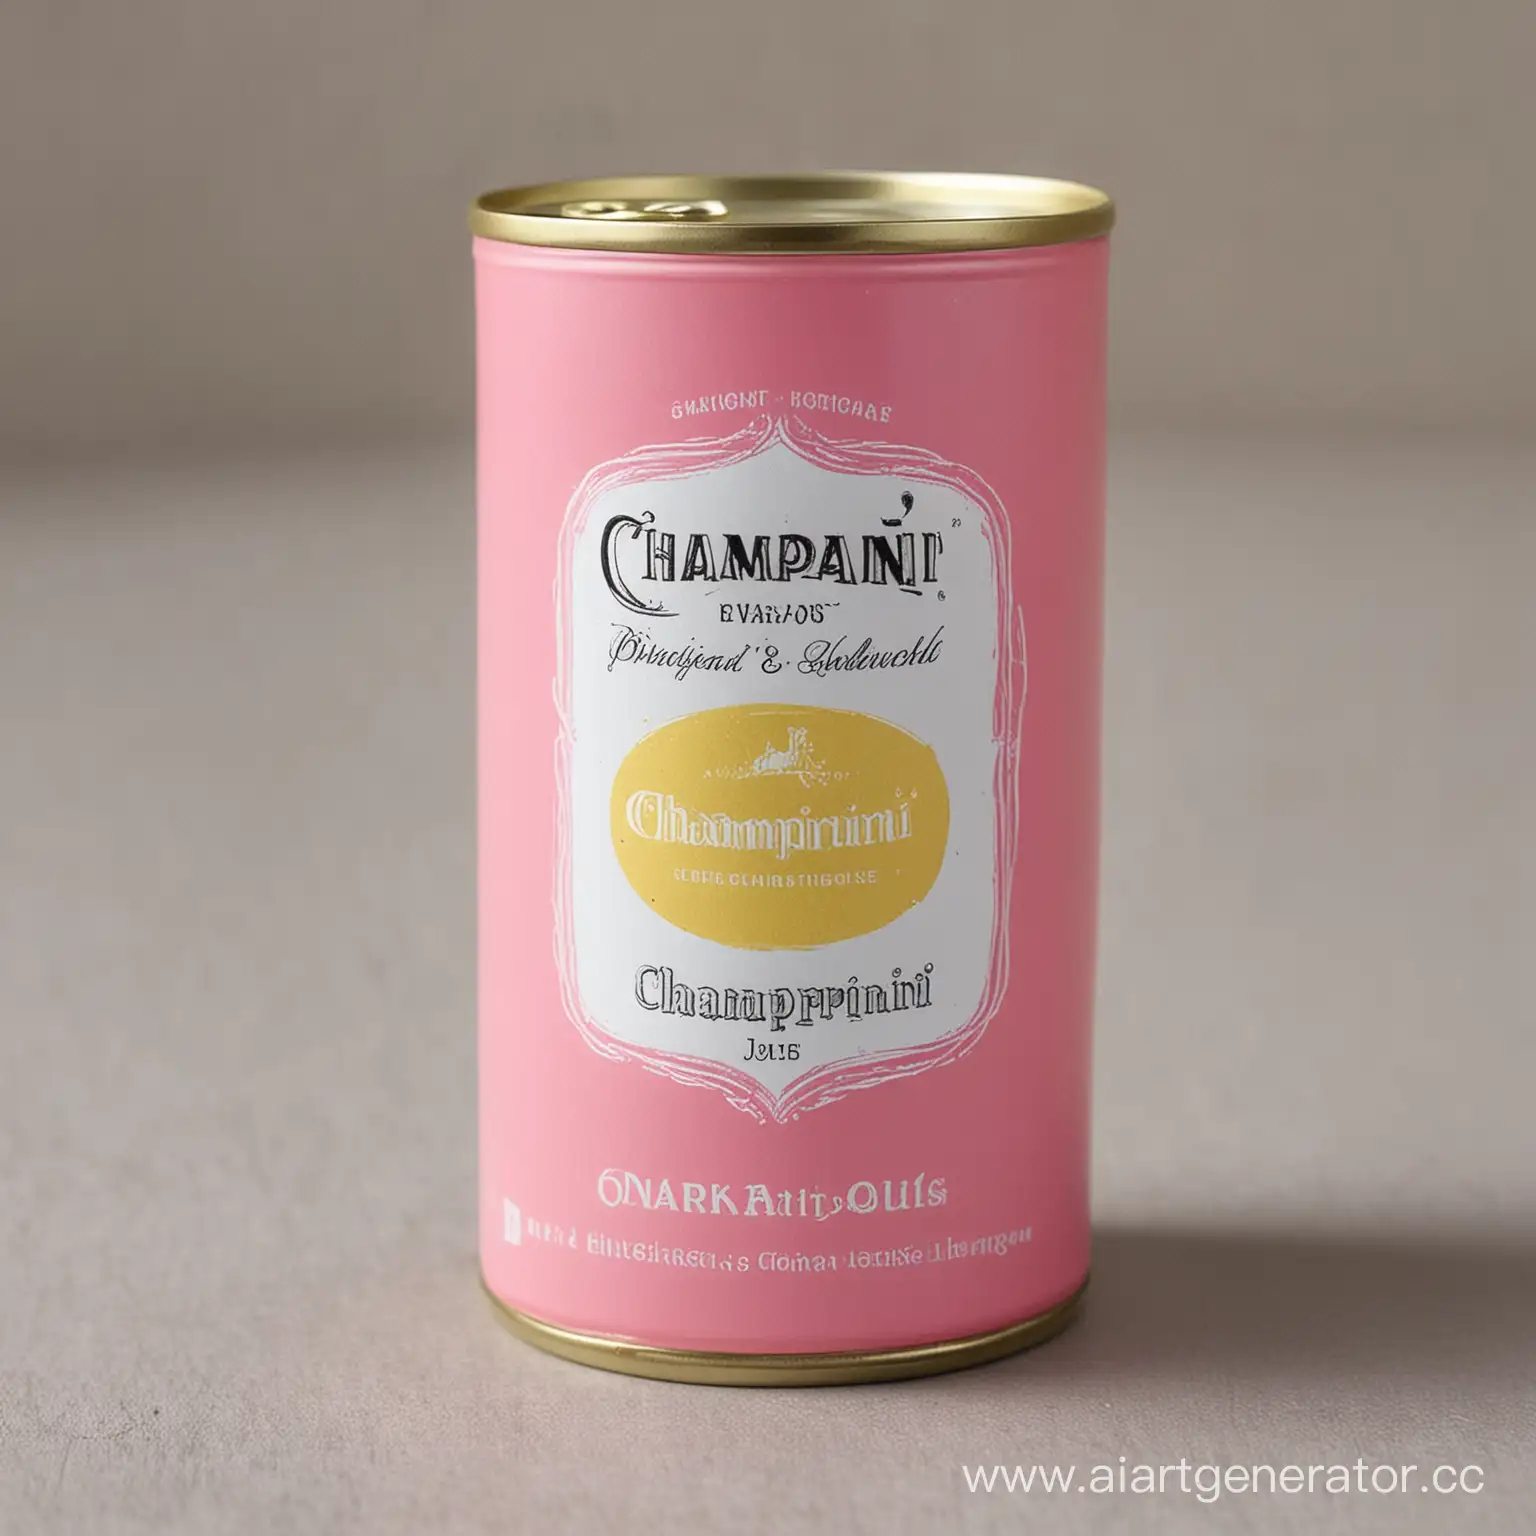 шампанское в жестебанке объемом 0,45 л. название "CHAMPARINI" в розовом и желтом цвете